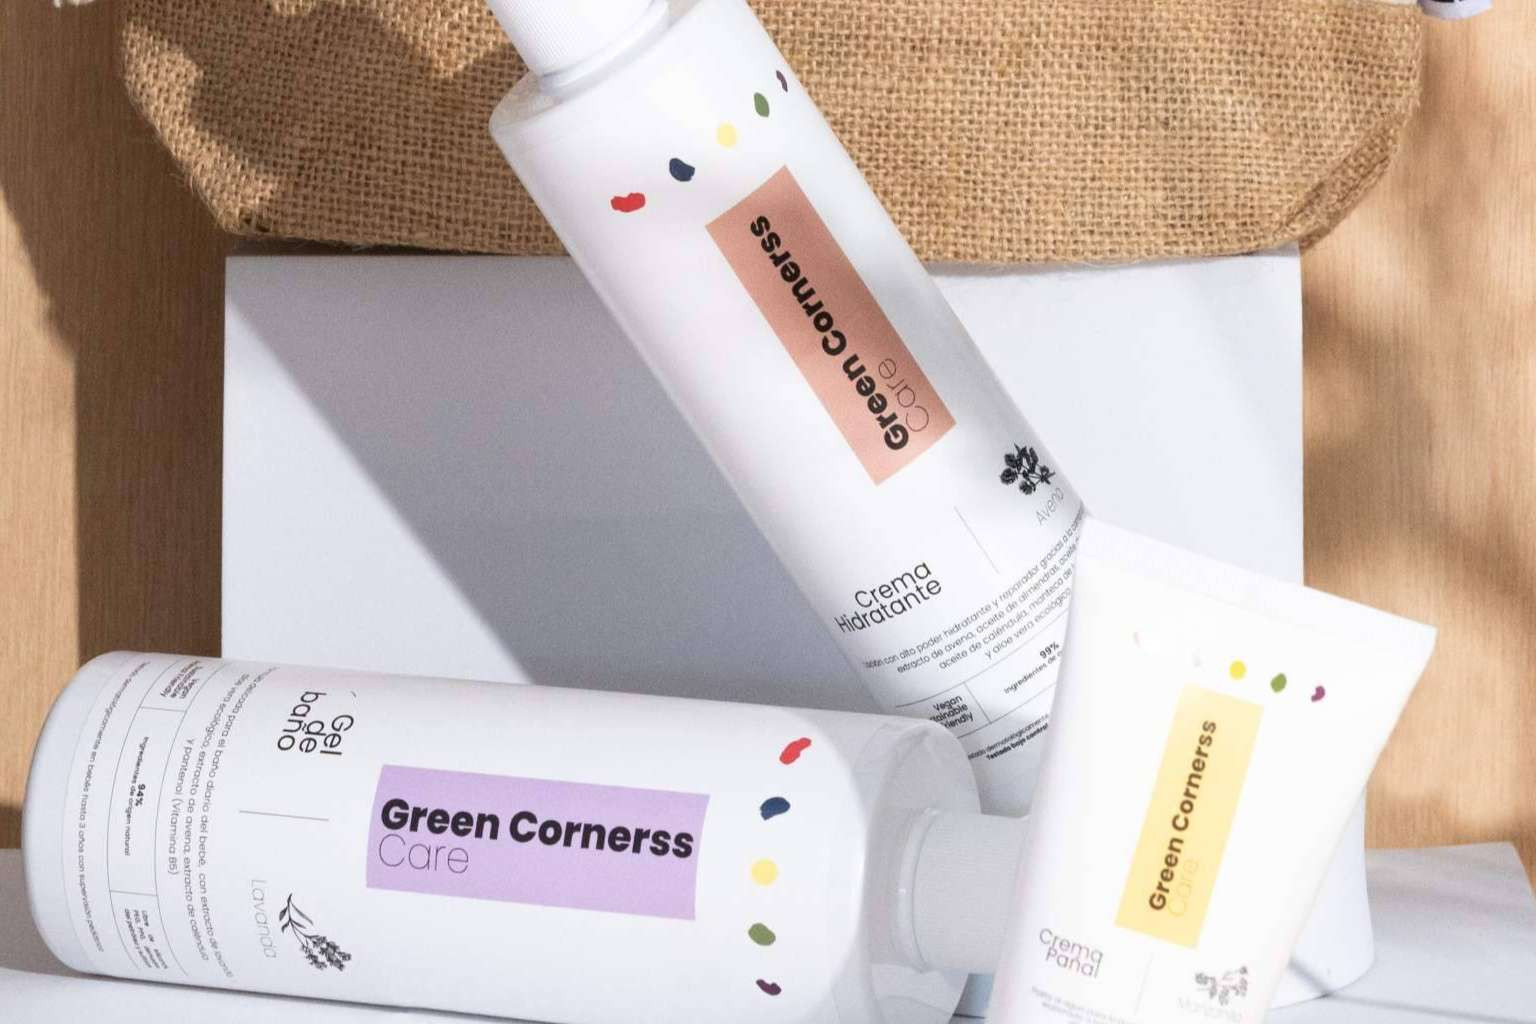  Green Cornerss va de la moda a la cosmética y en el primer año factura más de 1 millón de euros 